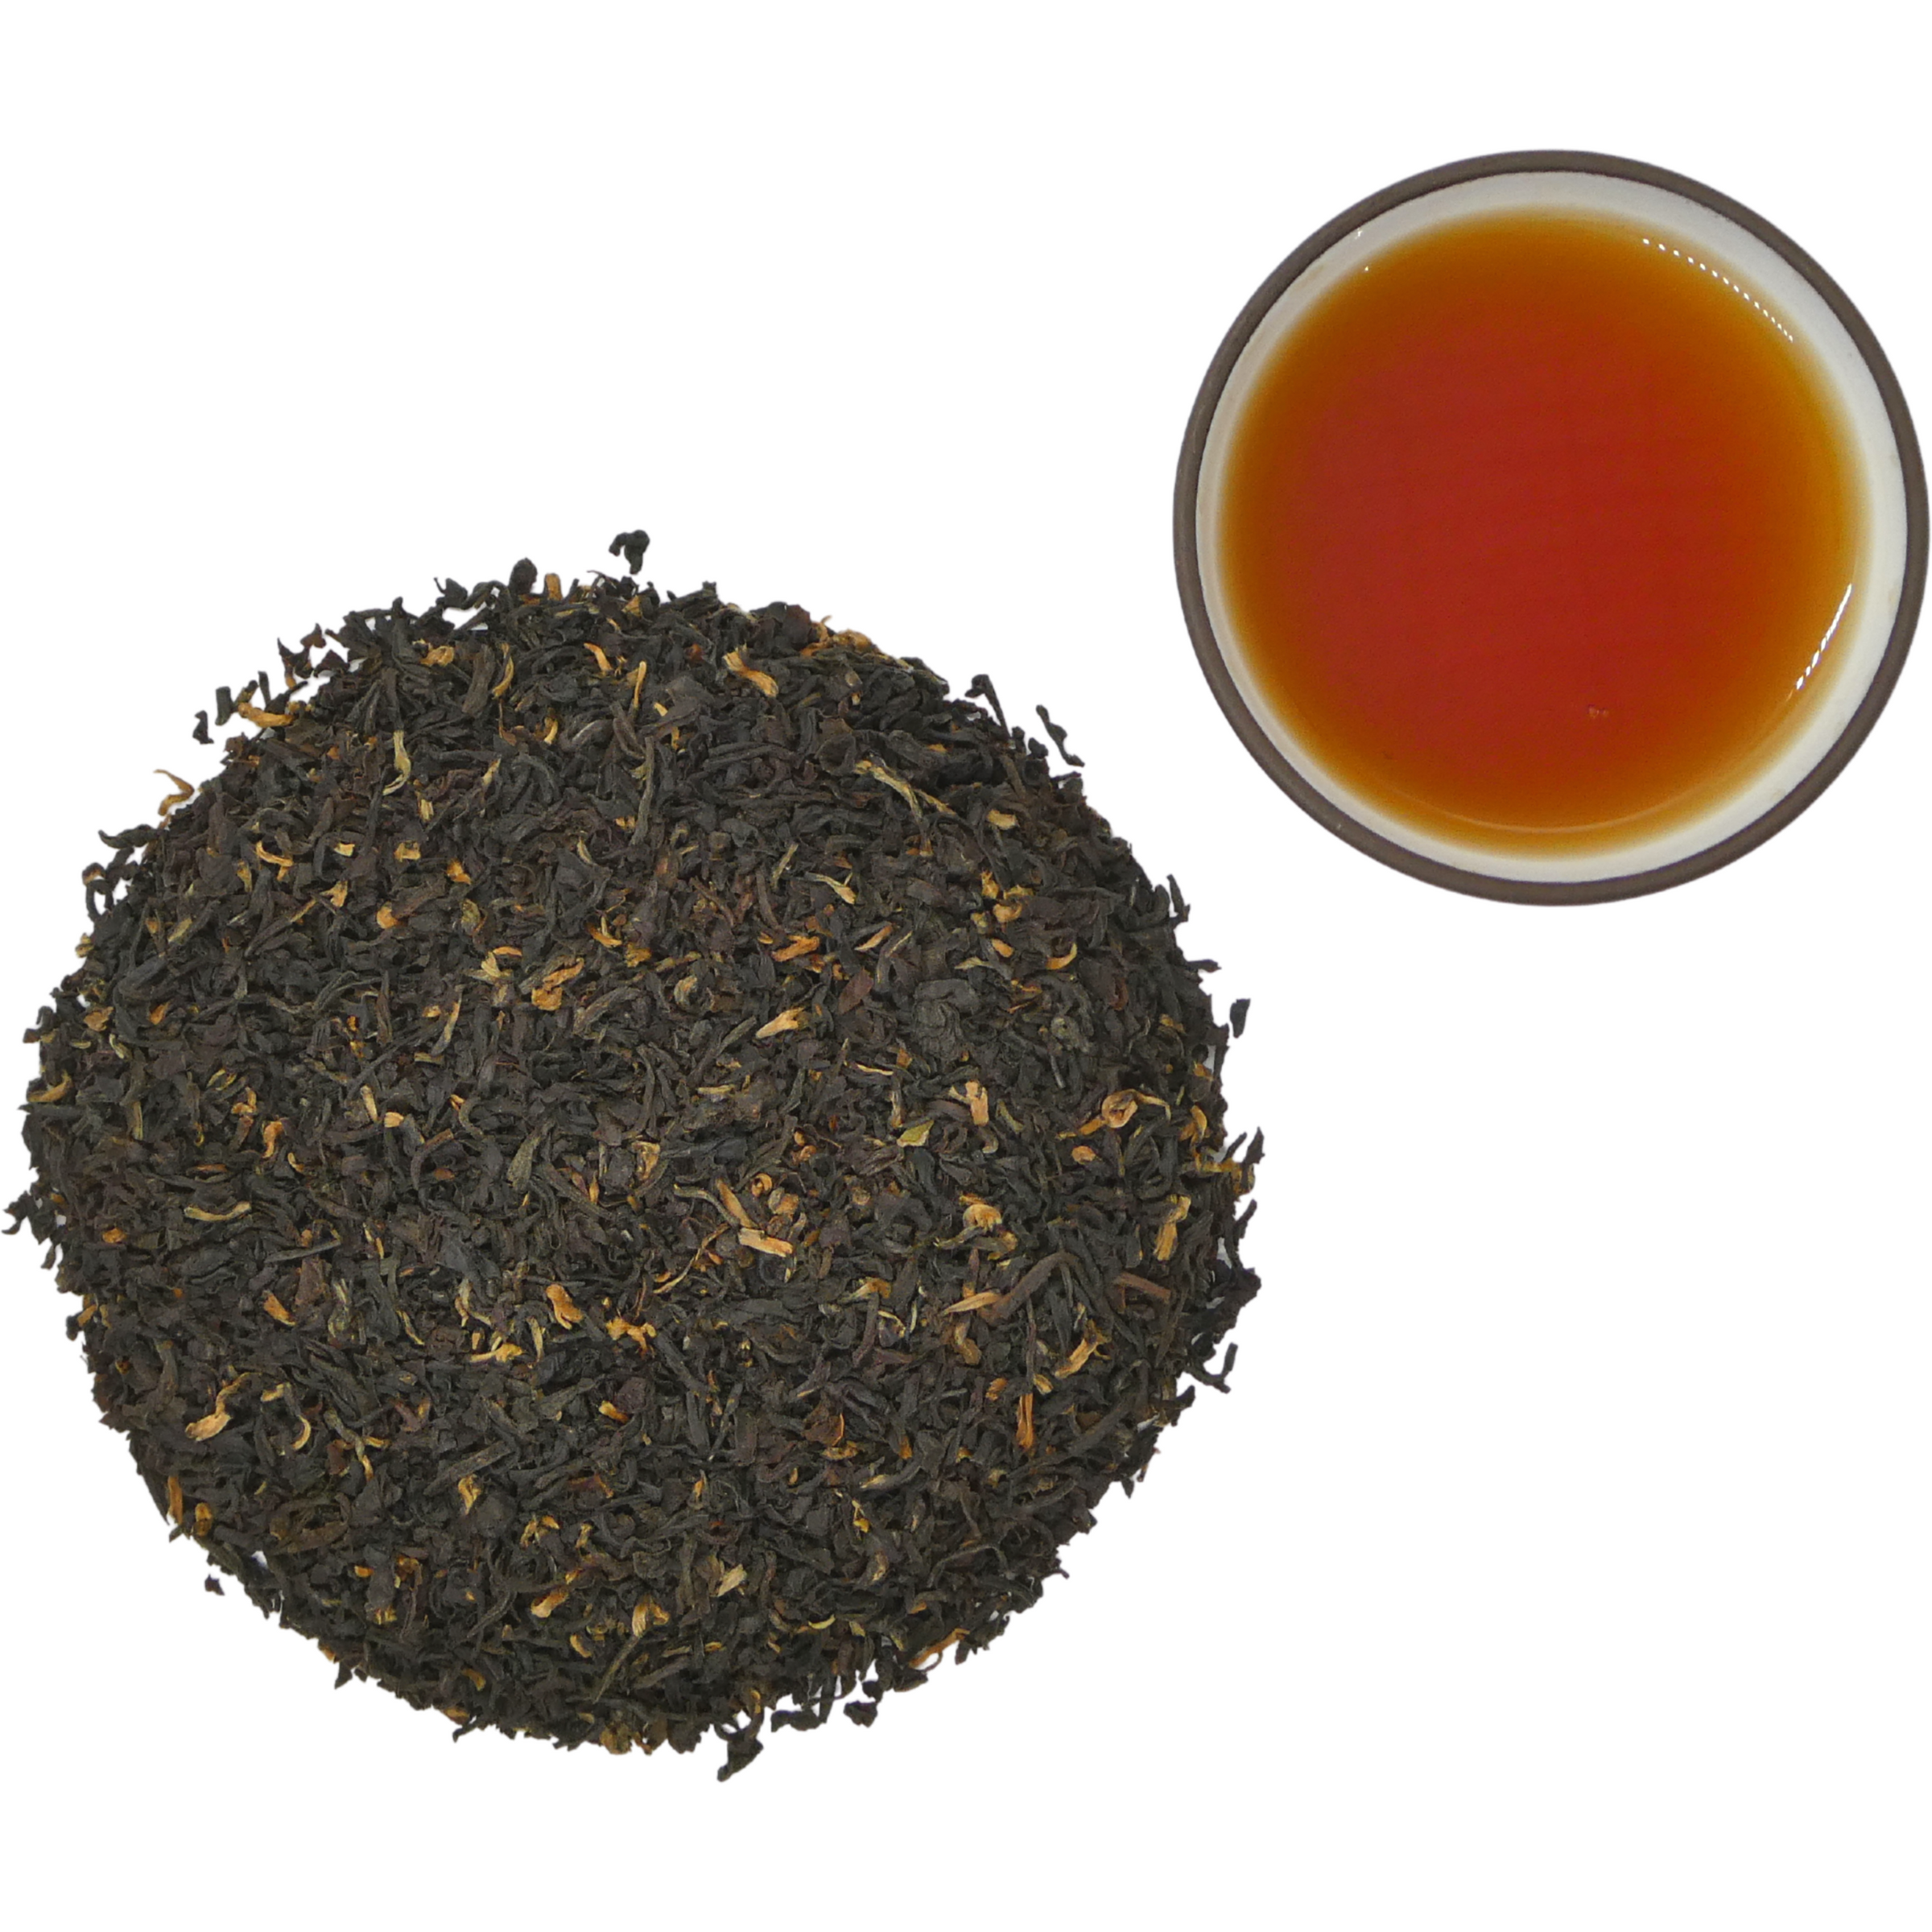 La colección de té en taza cultivada